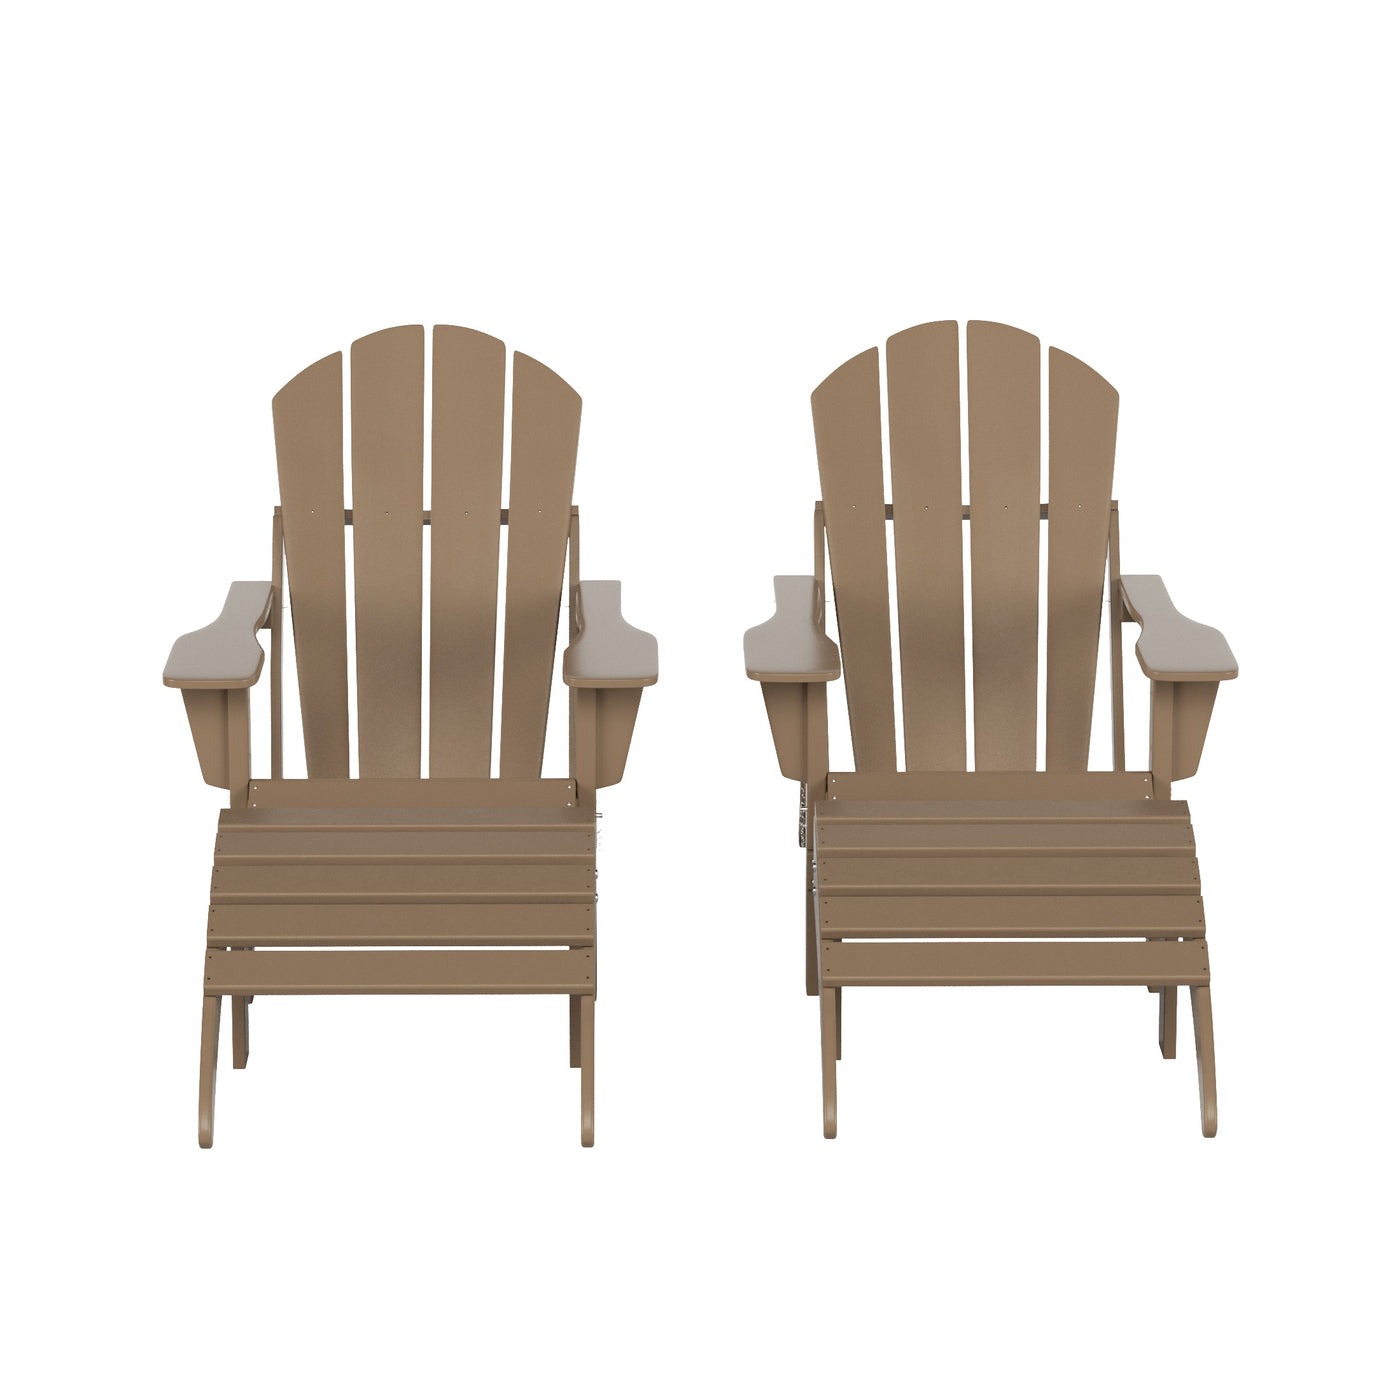 Malibu 4-Piece Classic Folding Adirondack Chair with Ottoman Set